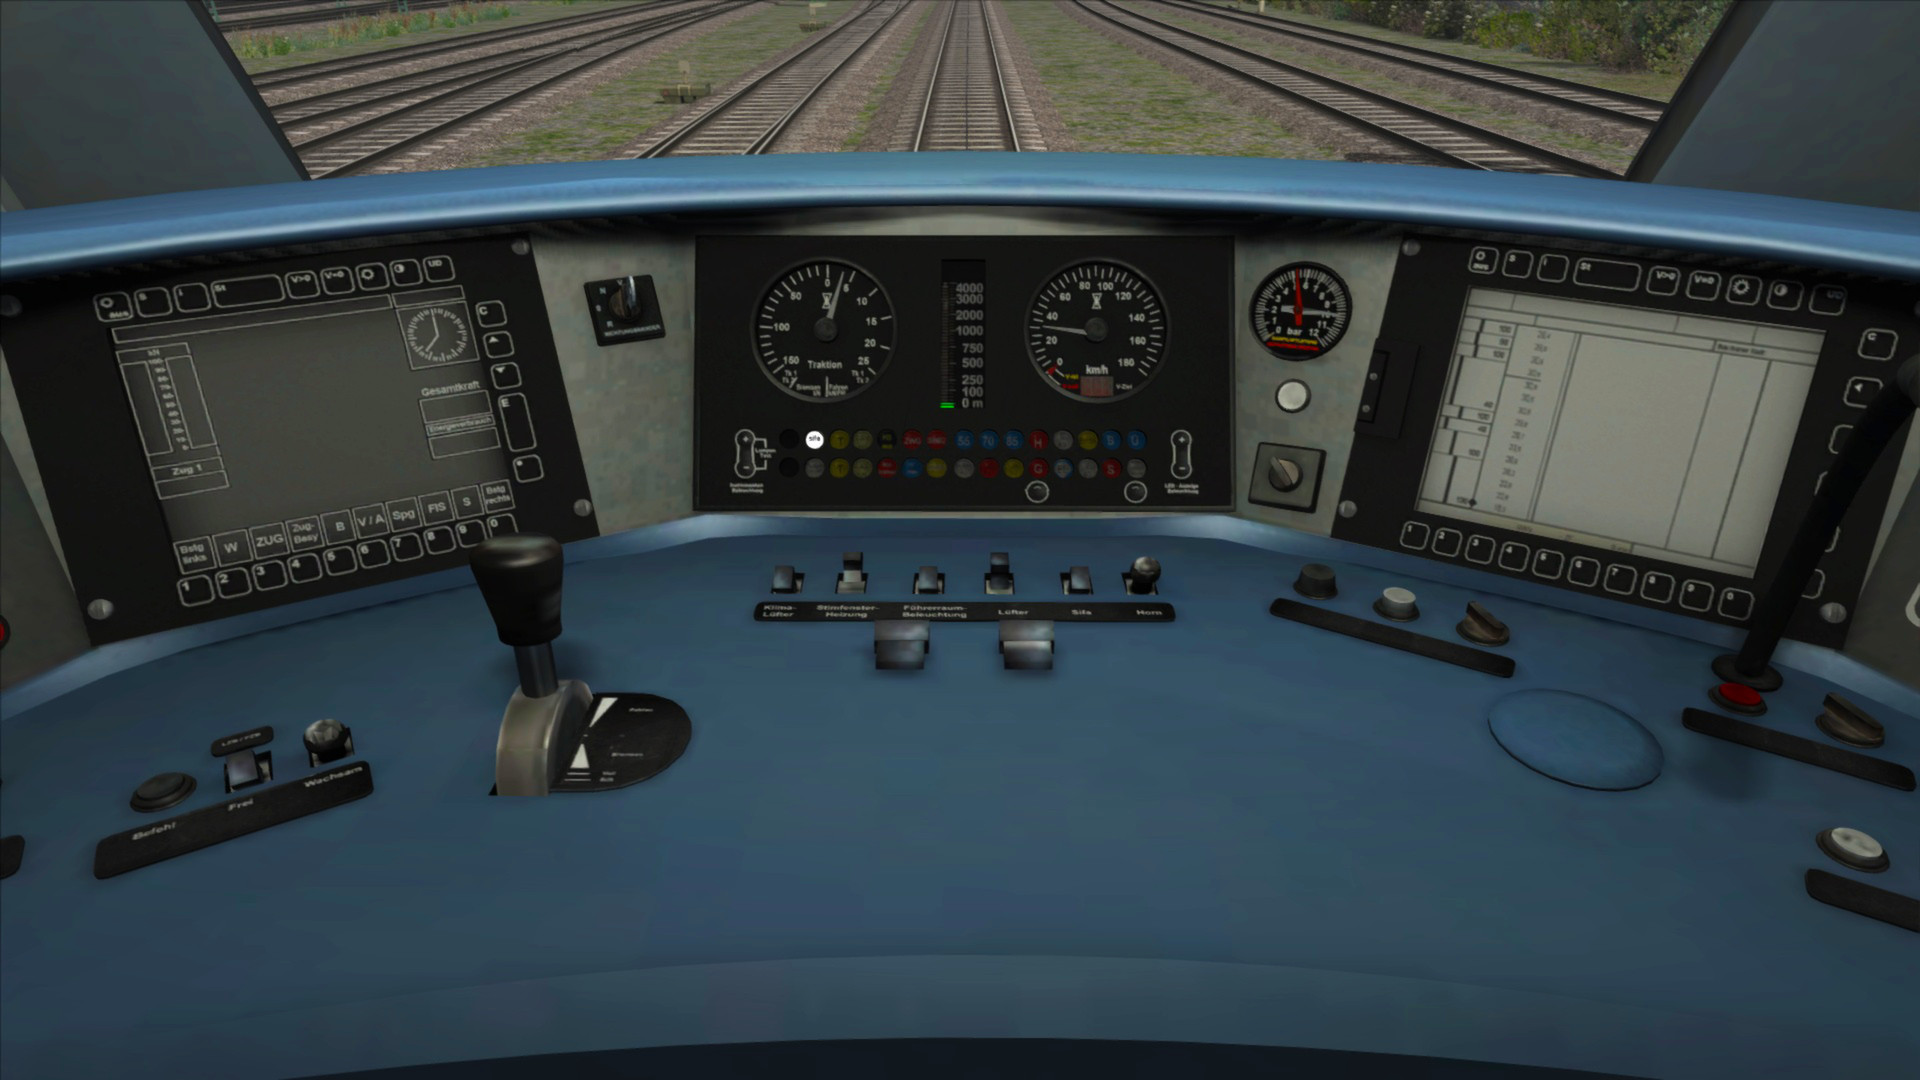 Train Simulator: DB BR424 EMU Add-On screenshot